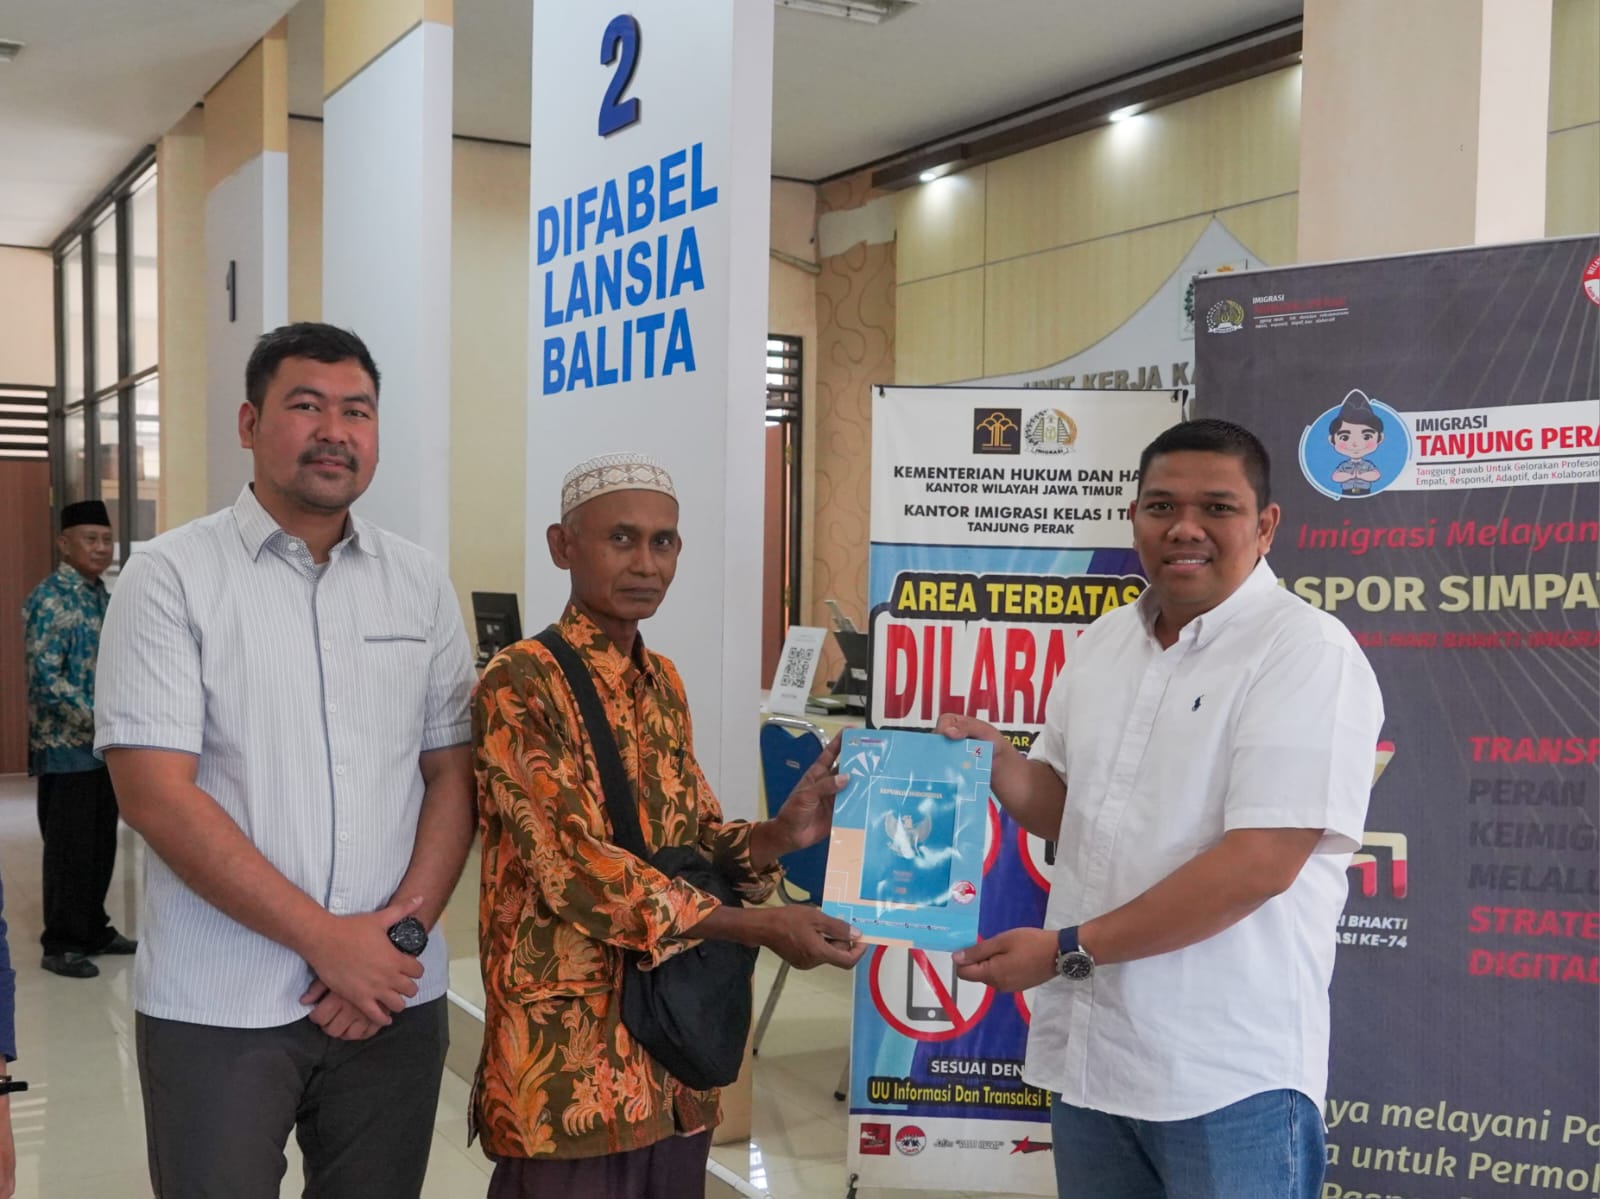 Pekan ke-3, Kantor Imigrasi Tanjung Perak Hadirkan Kembali Layanan Paspor Simpatik di UKK Bojonegoro